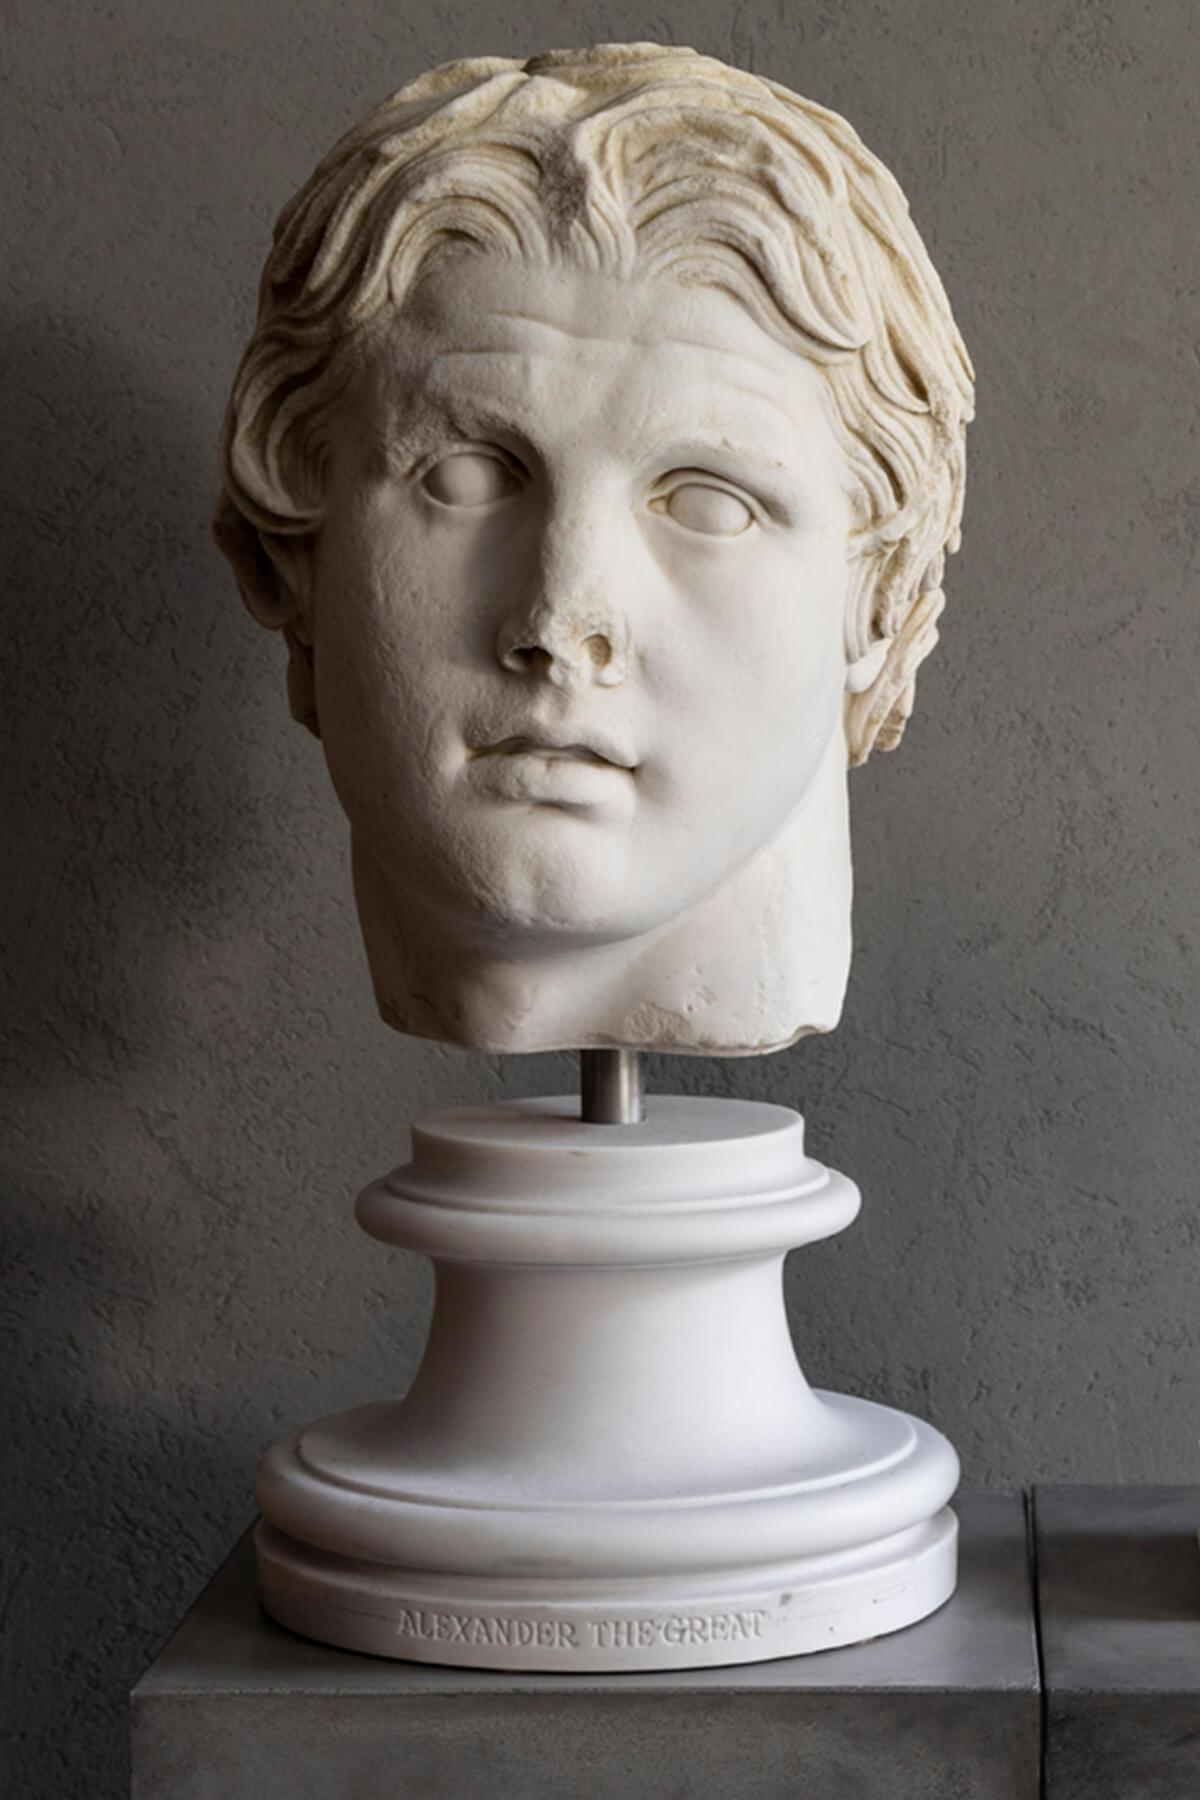 Hauteur : 56 cm / Poids : 20 kg

Alexander, le vrai nom de Macédoine III. Alexander, plus connu sous le nom d'Alexandre le Grand, était roi de l'ancien royaume grec de Macédoine et membre de la dynastie des Argéades. Il est né à Pella en 356 avant